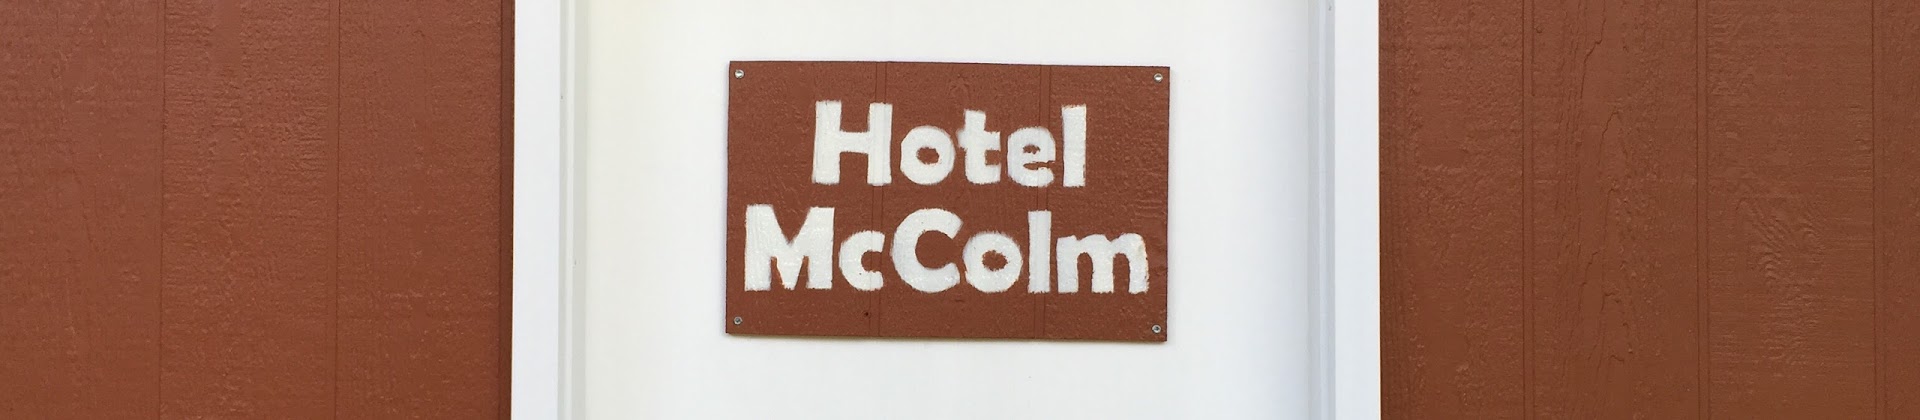 Hotel McColm